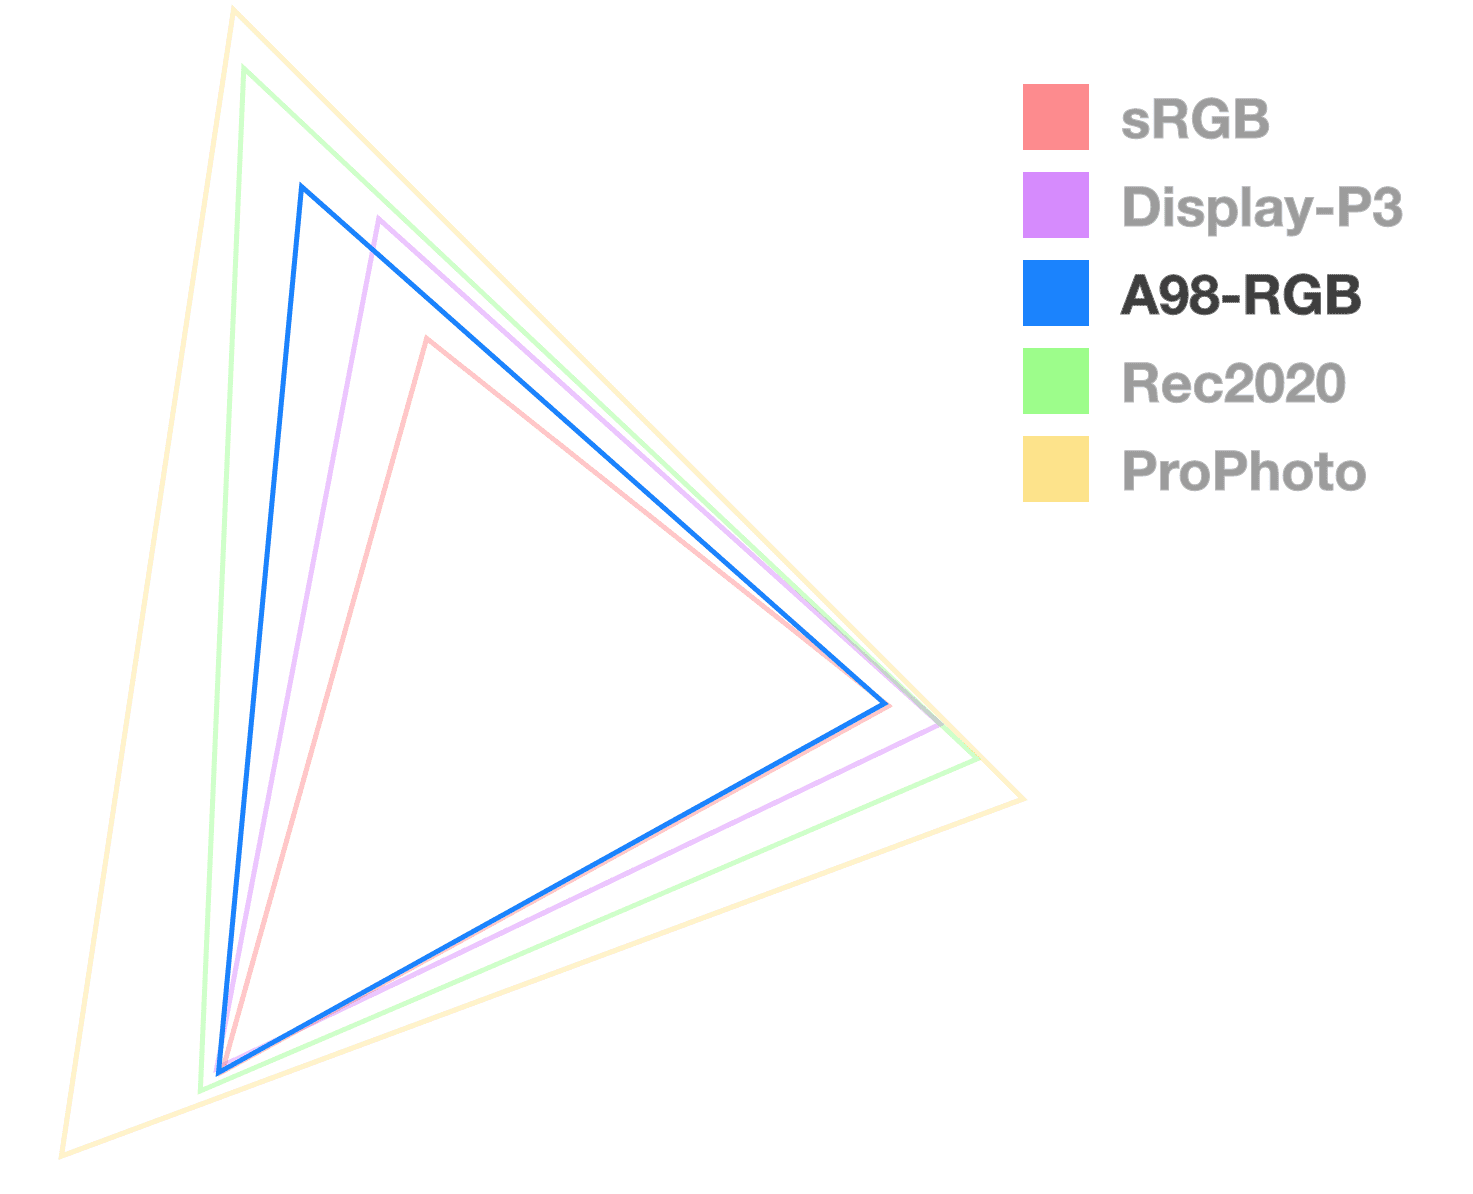 Trójkąt A98 jest jedynym, który jest całkowicie nieprzezroczysty, ponieważ ułatwia wizualizację rozmiaru gamy. Wygląda na trójkątny średni rozmiar.